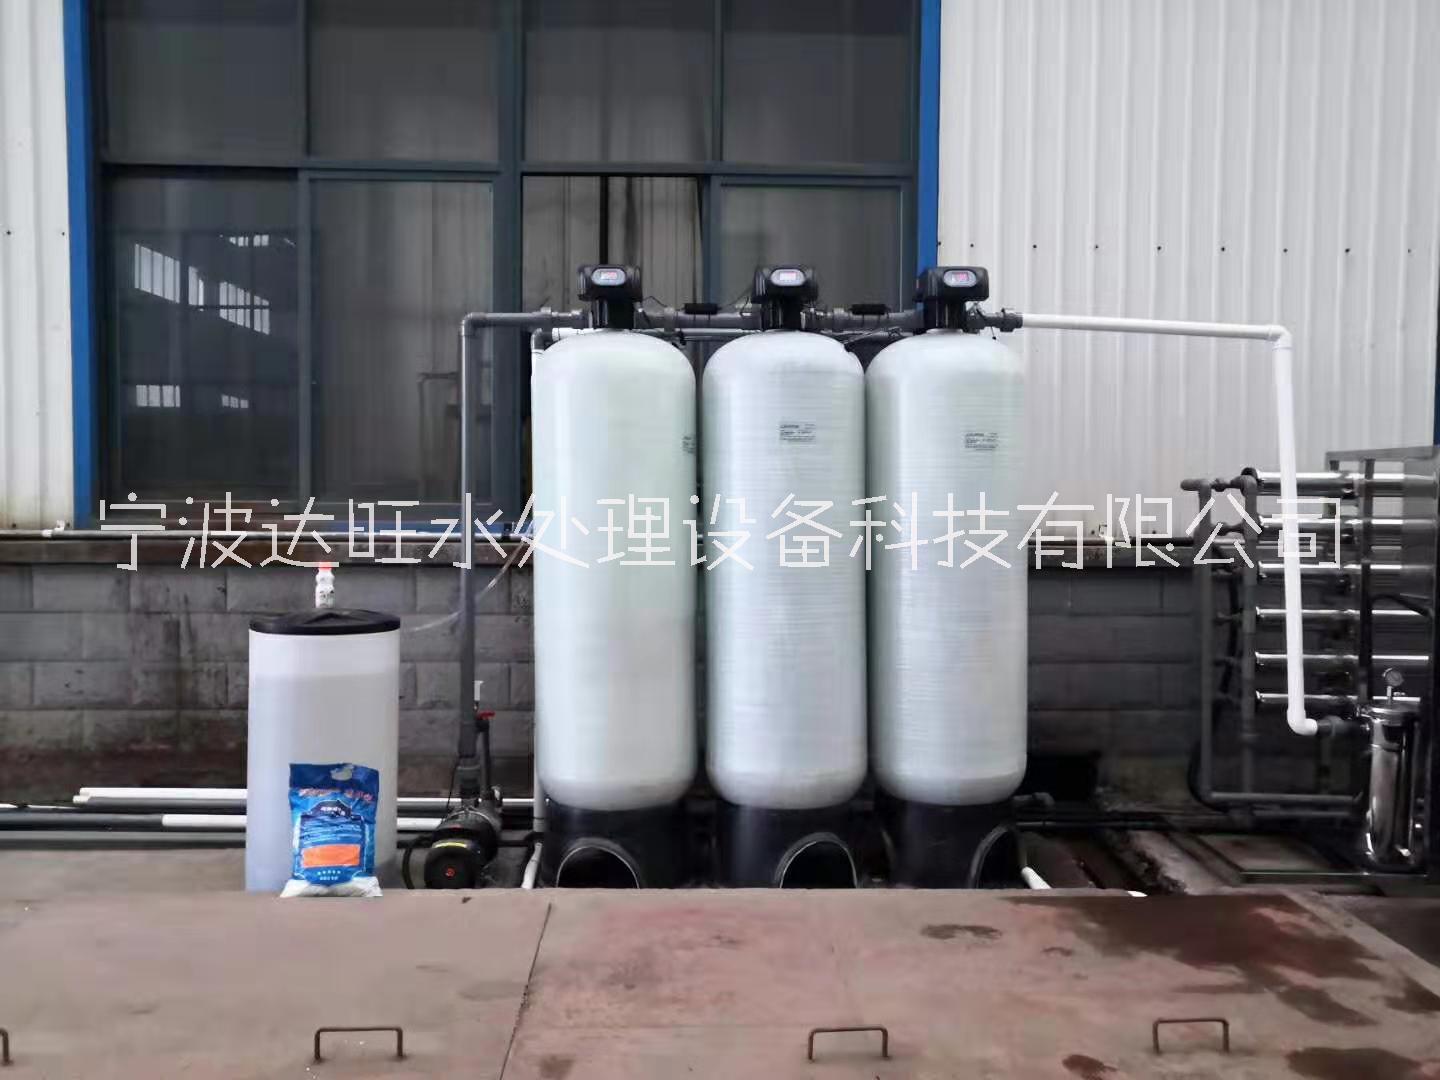 衢州市周边反渗透纯水处理设备厂家 企业用去离子纯水设备图片